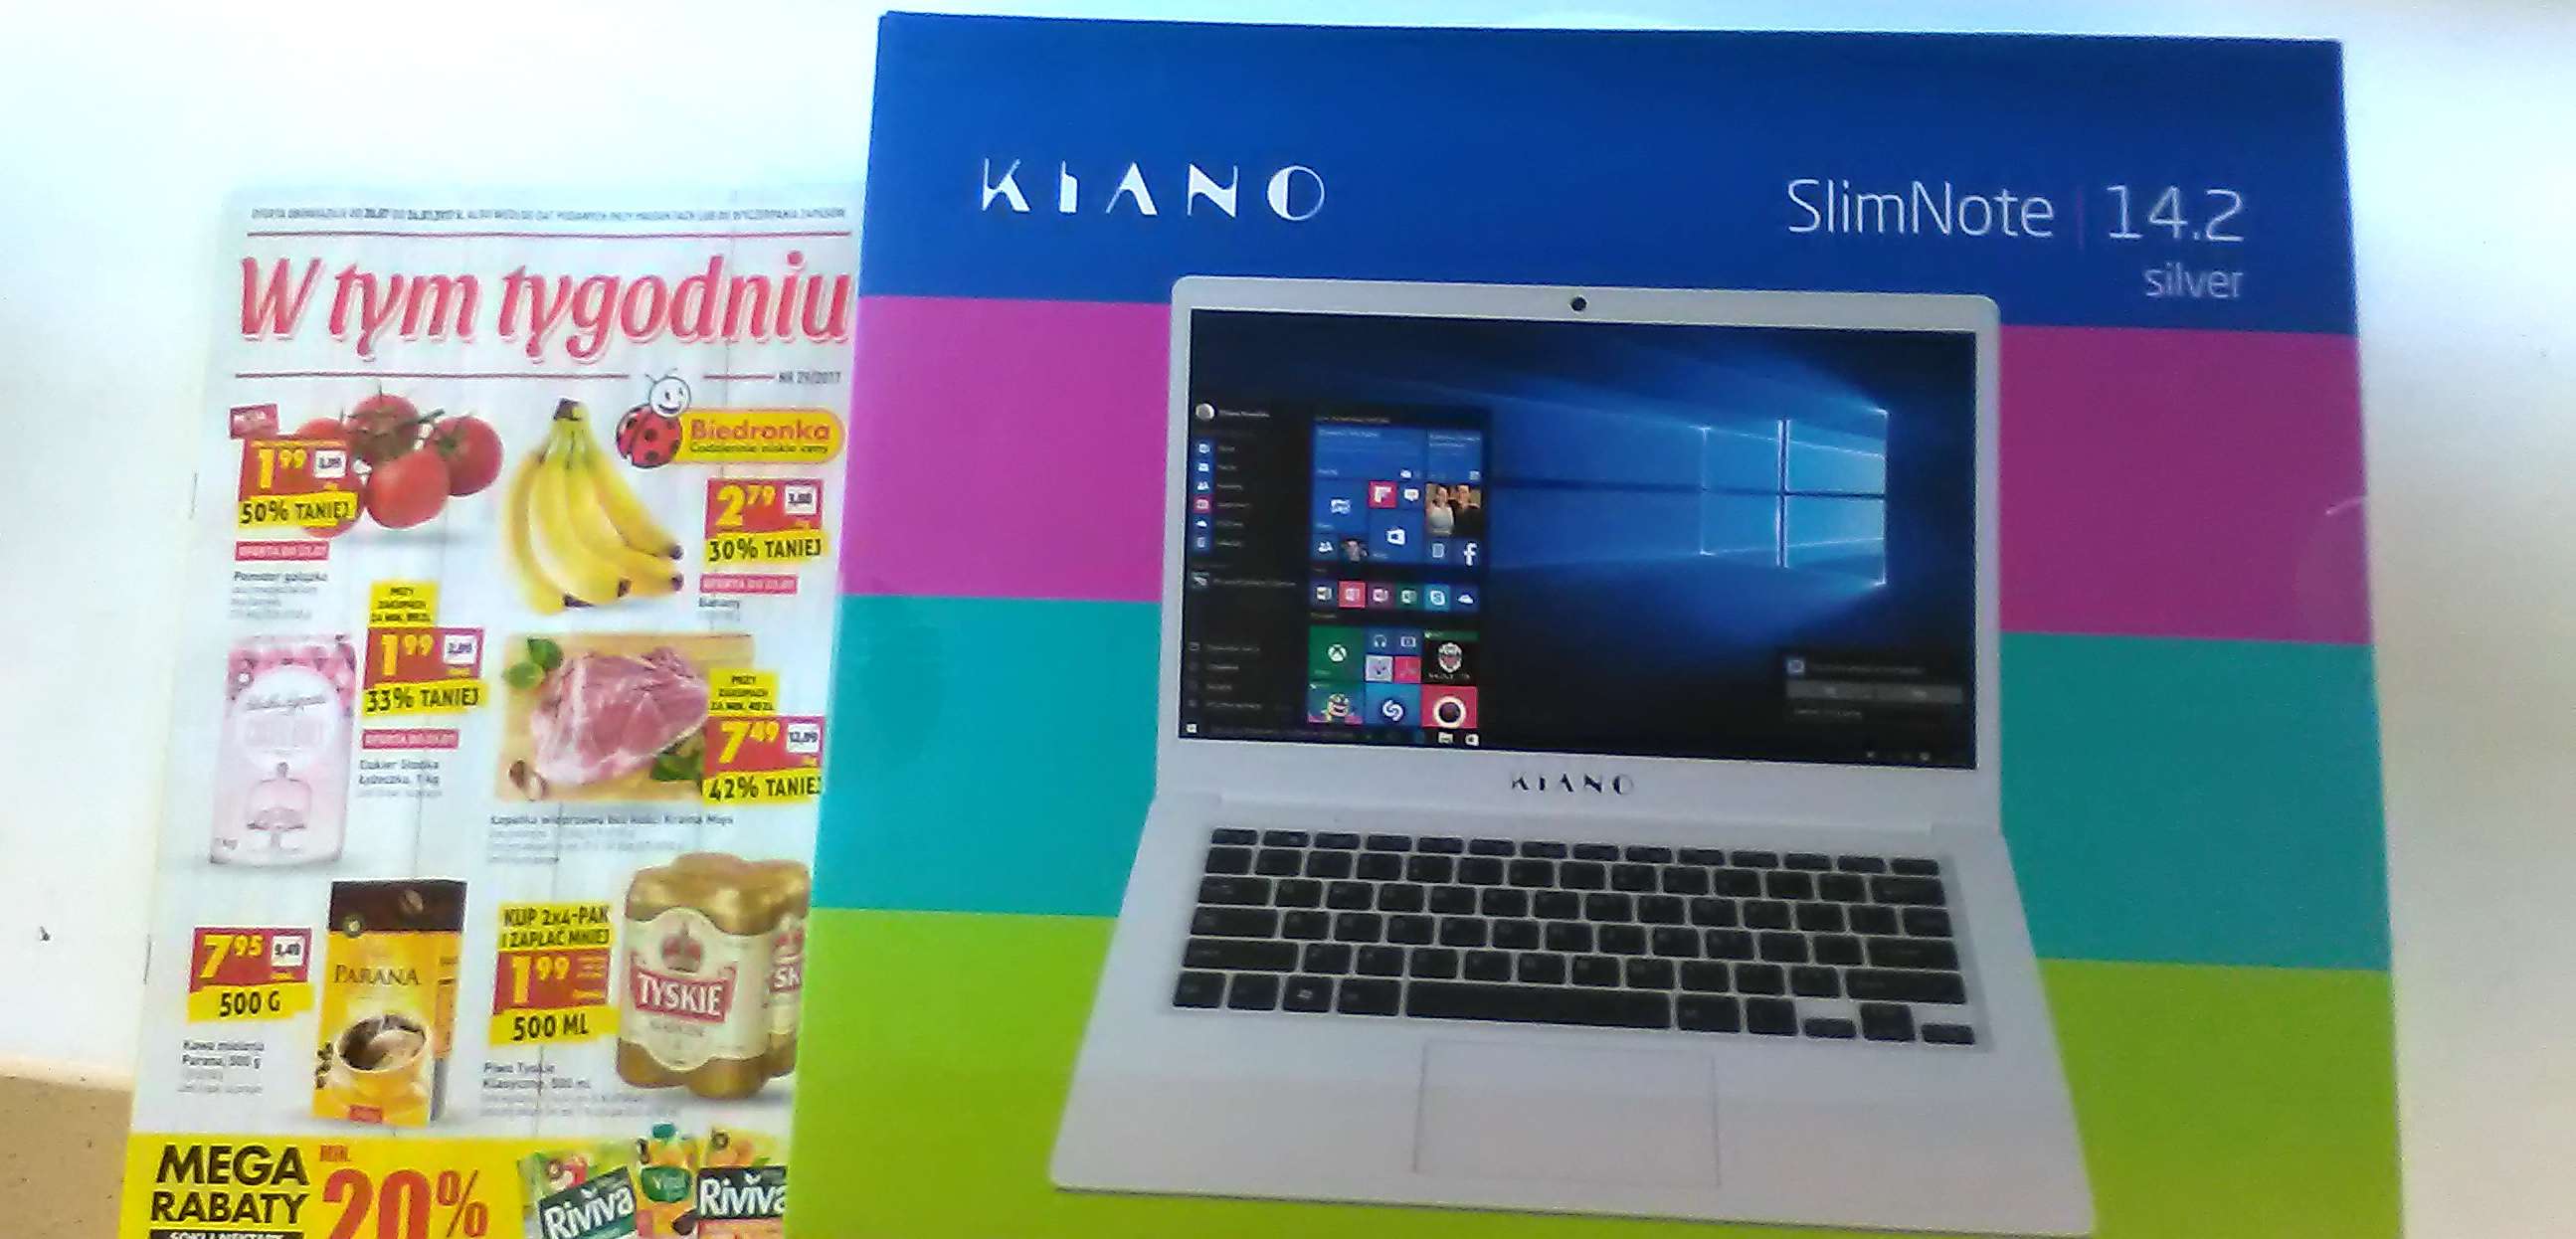 Kiano SlimNote 14.2 w Biedronce. Laptop za 599 zł